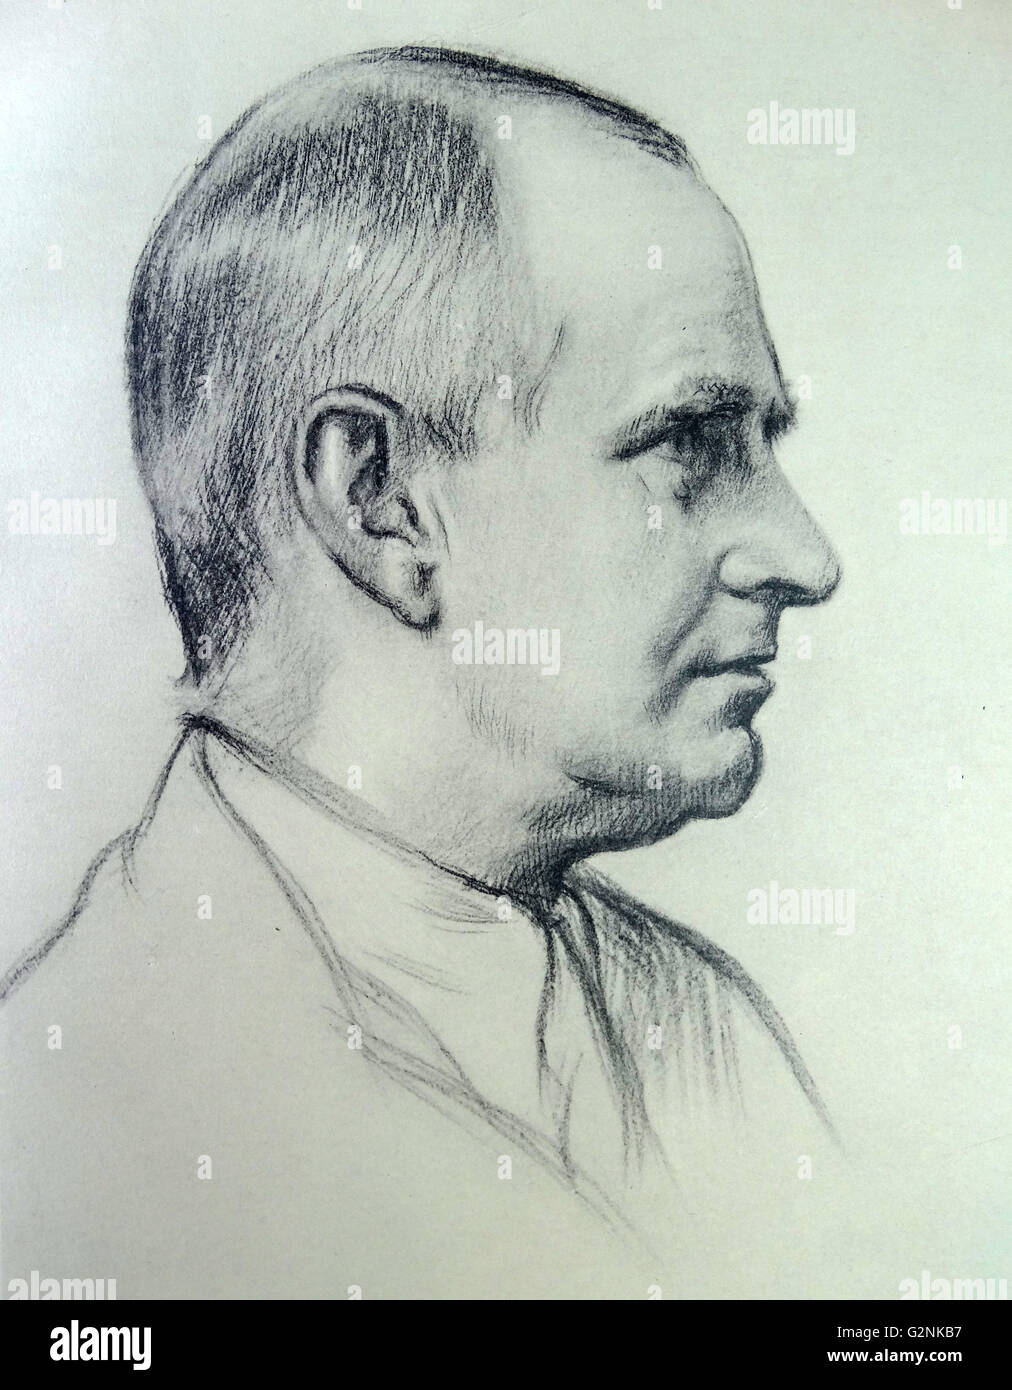 Portrait von Professor A.S. Eddington von Sir William Rothenstein. Rothenstein (1872-1945) war ein englischer Maler, Grafiker und Zeichner. Stockfoto